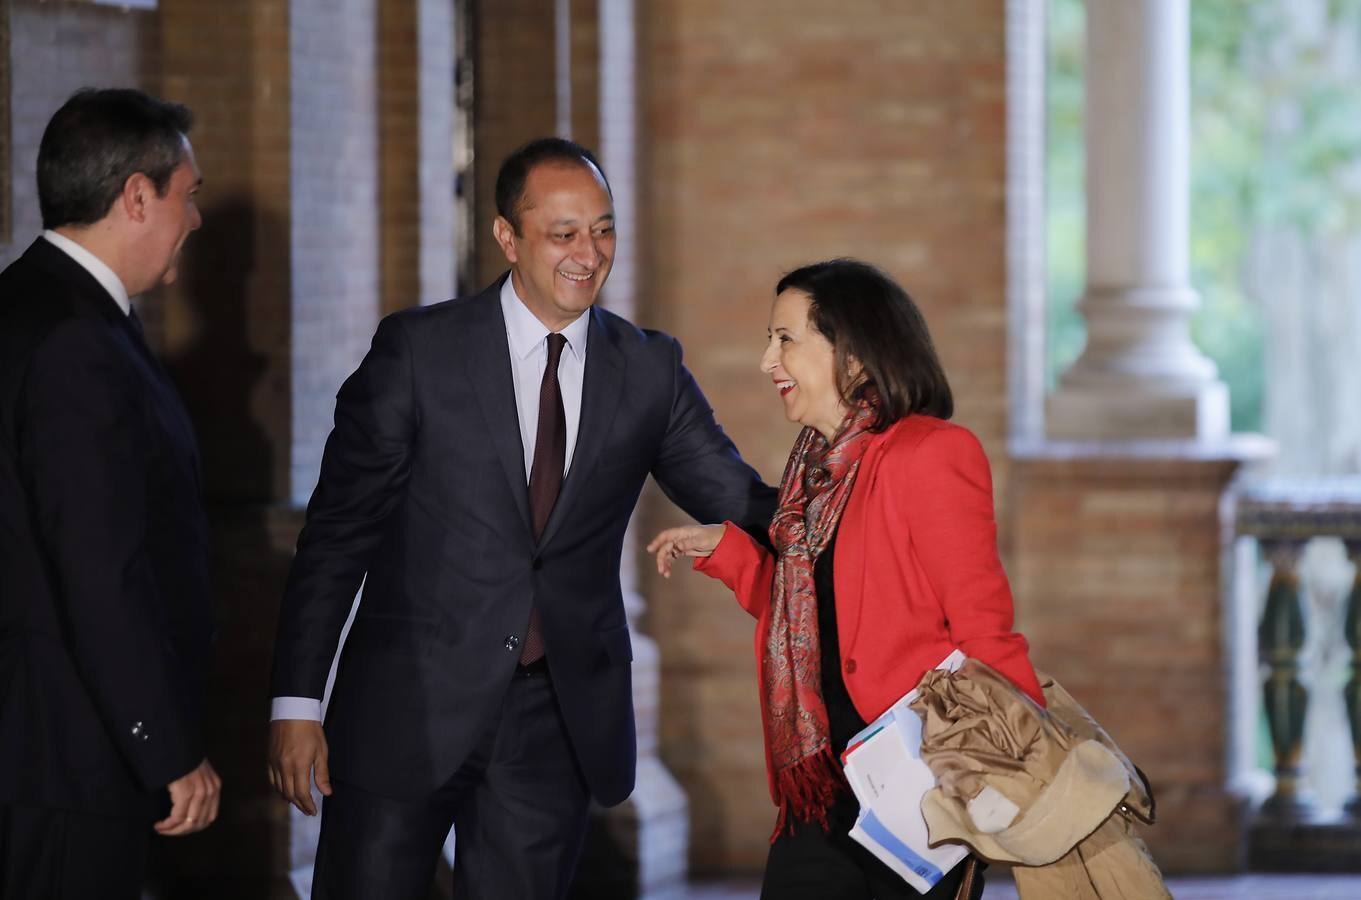 En imágenes, la reunión del Consejo de Ministros en Sevilla